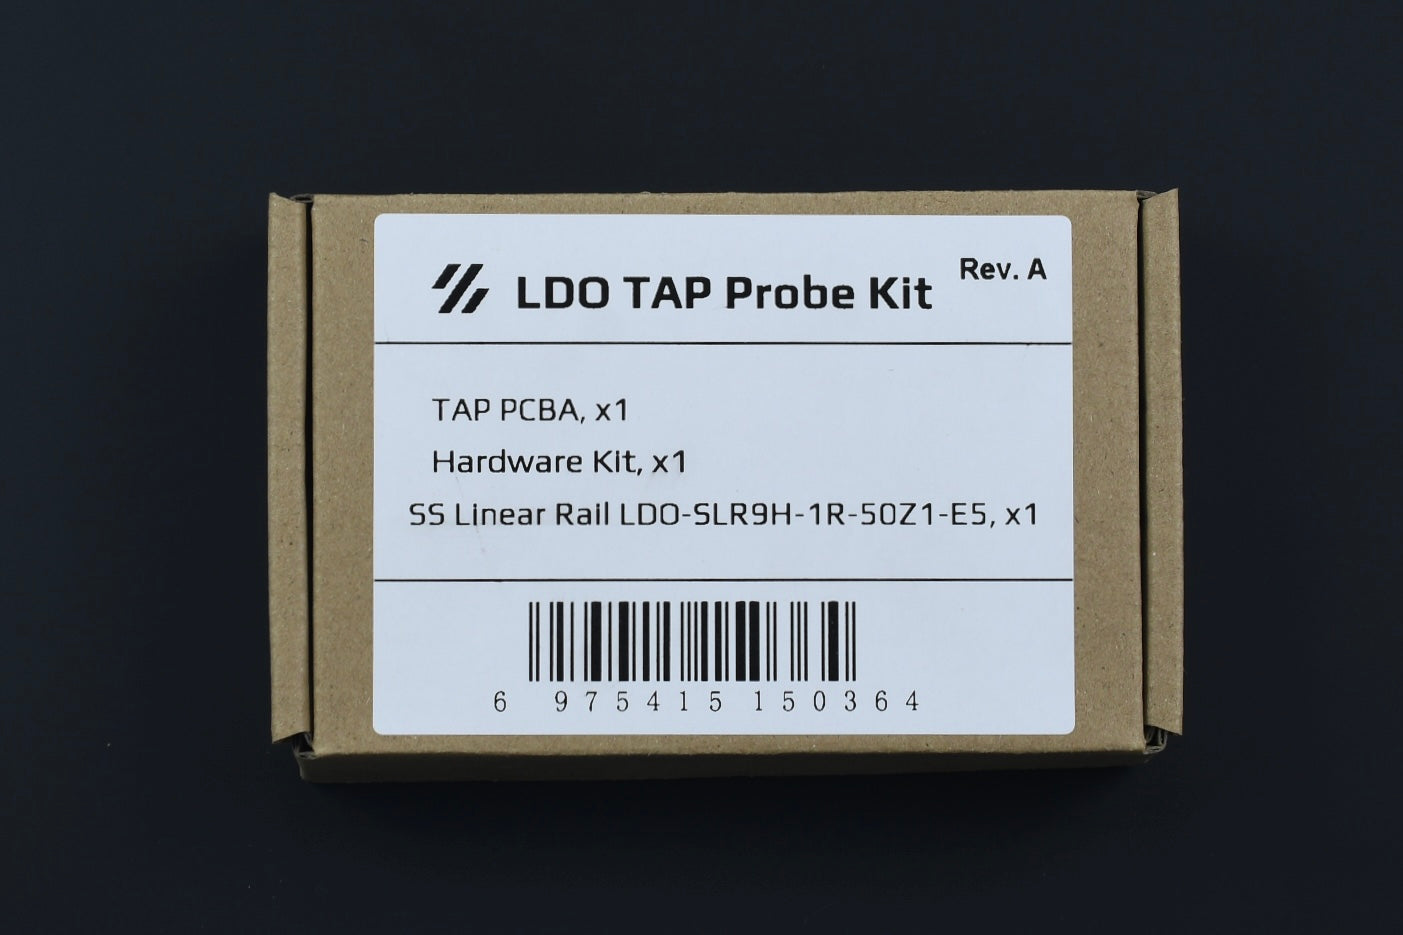 LDO Tap Probe Kit Rev A